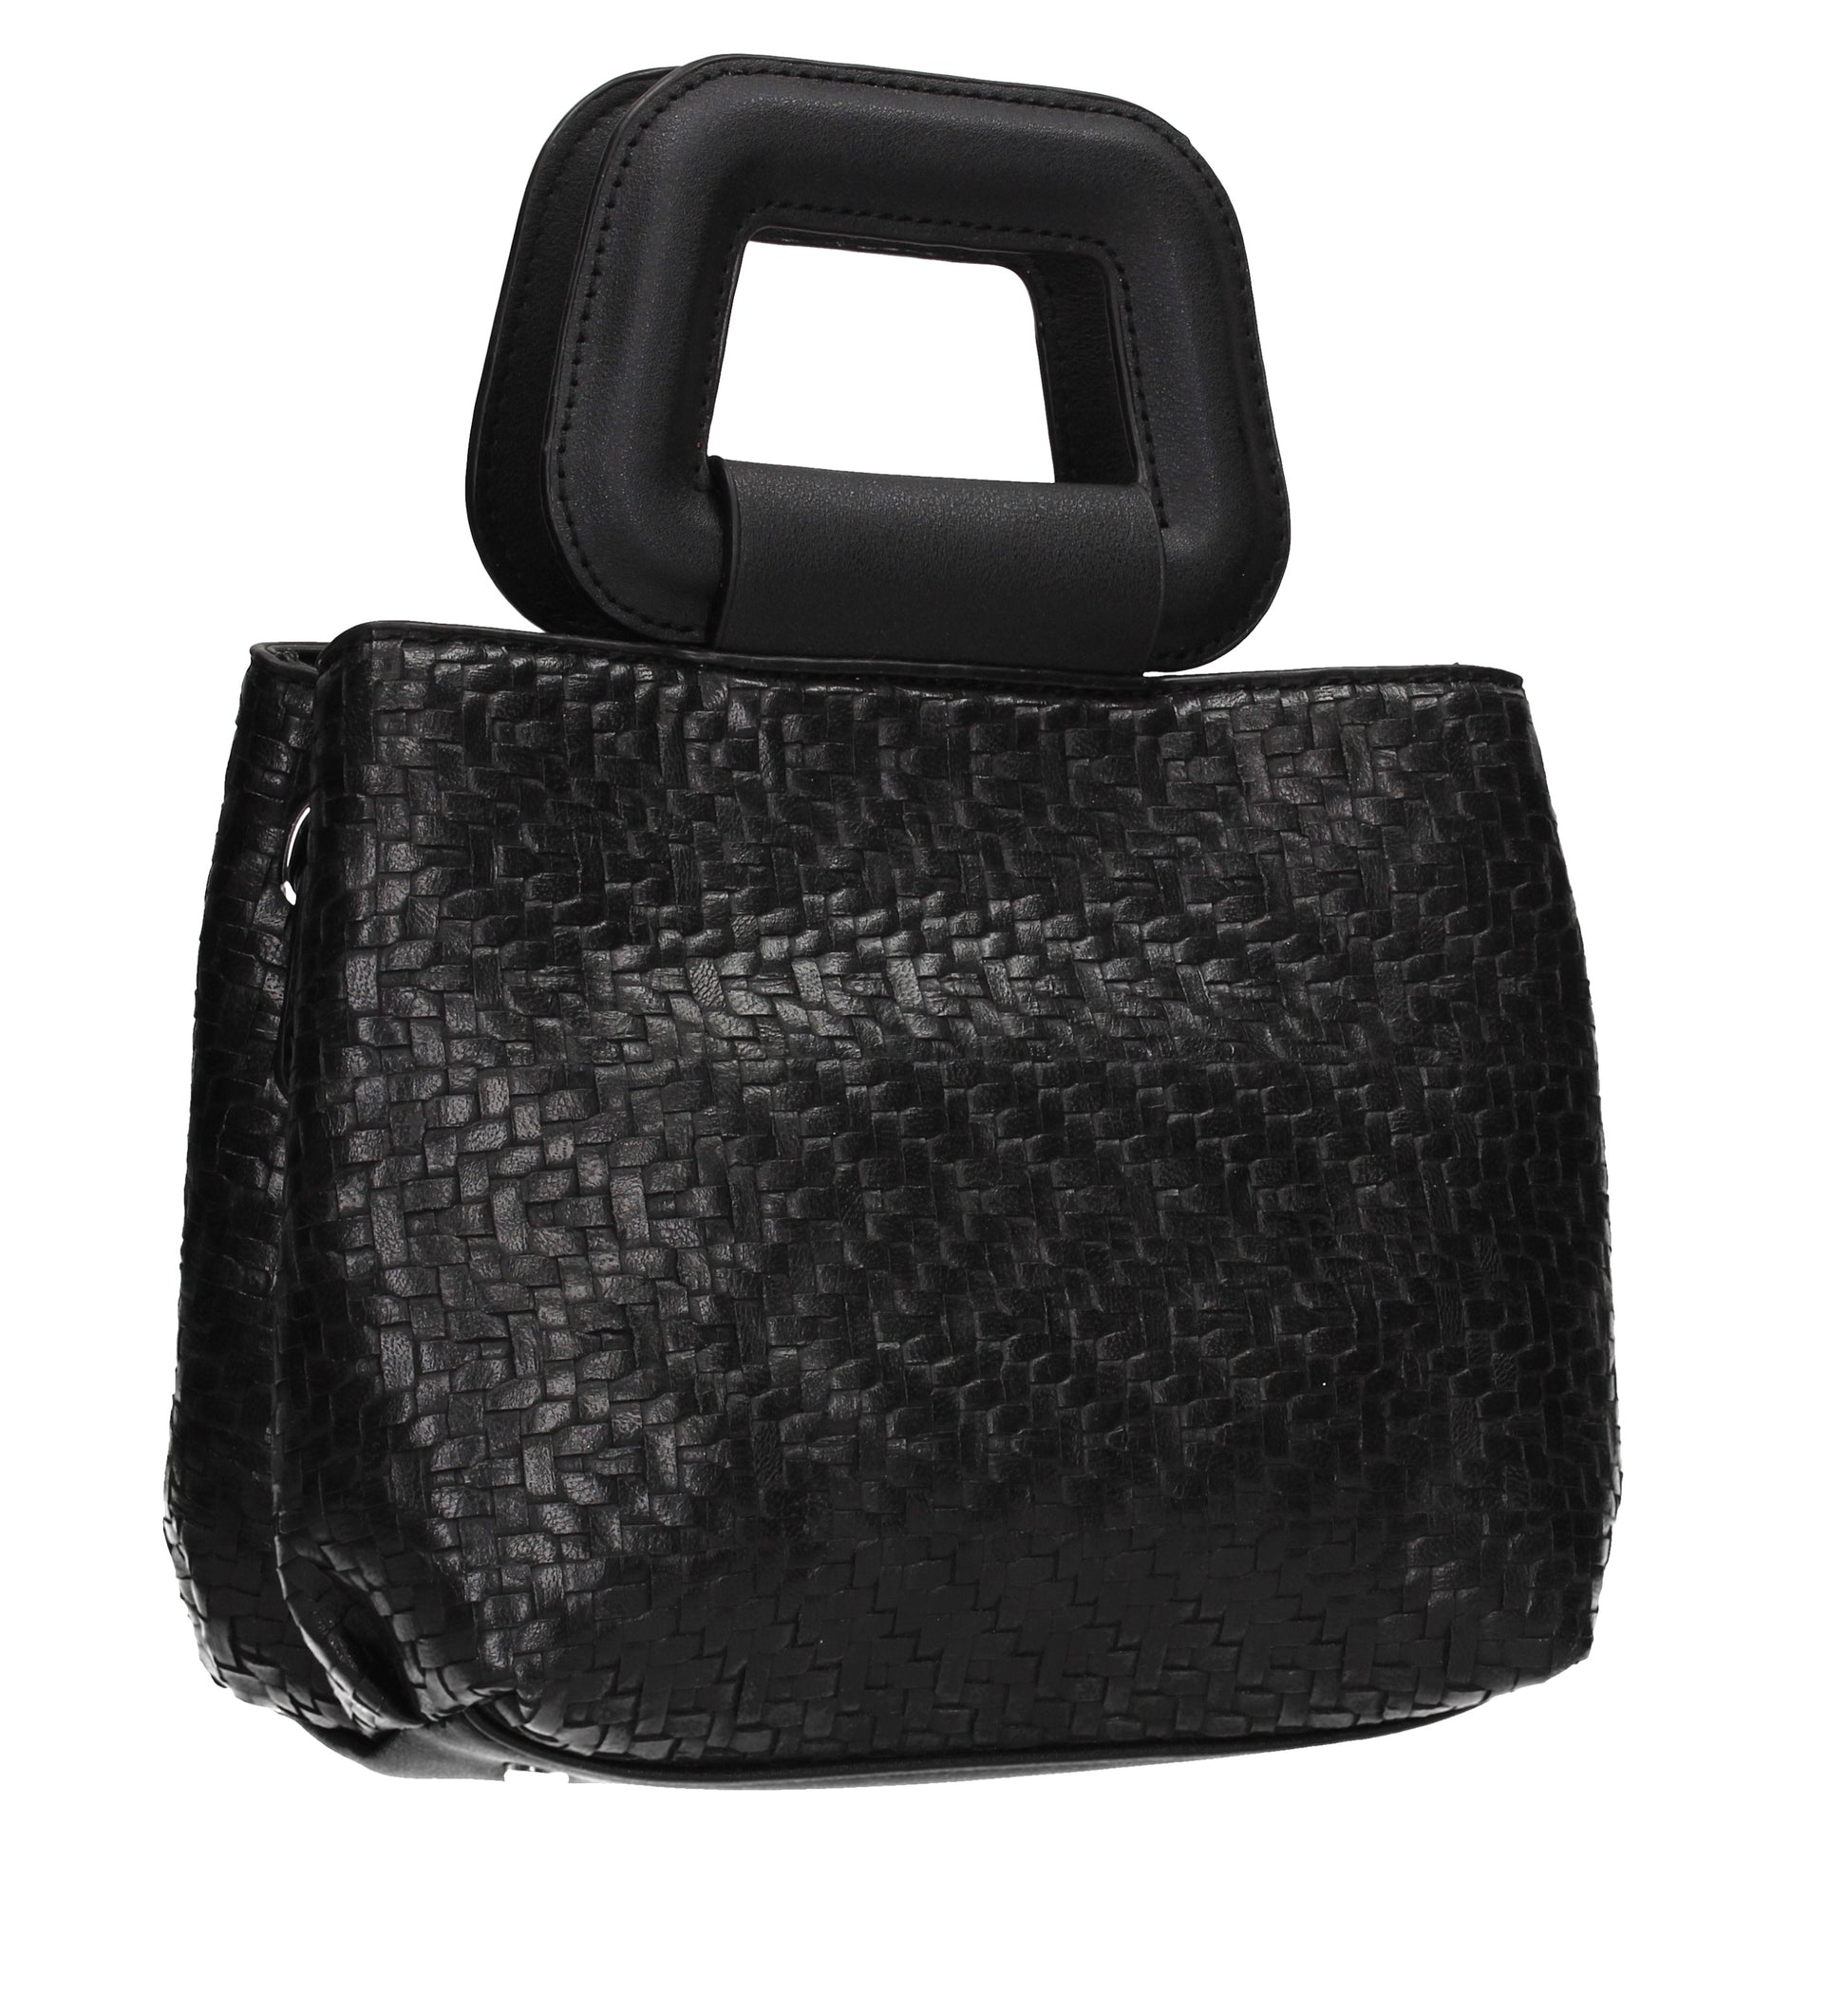 SWANKYSWANS Dahlia Clutch Bag Black Cute Cheap Clutch Bag For Weddings School and Work